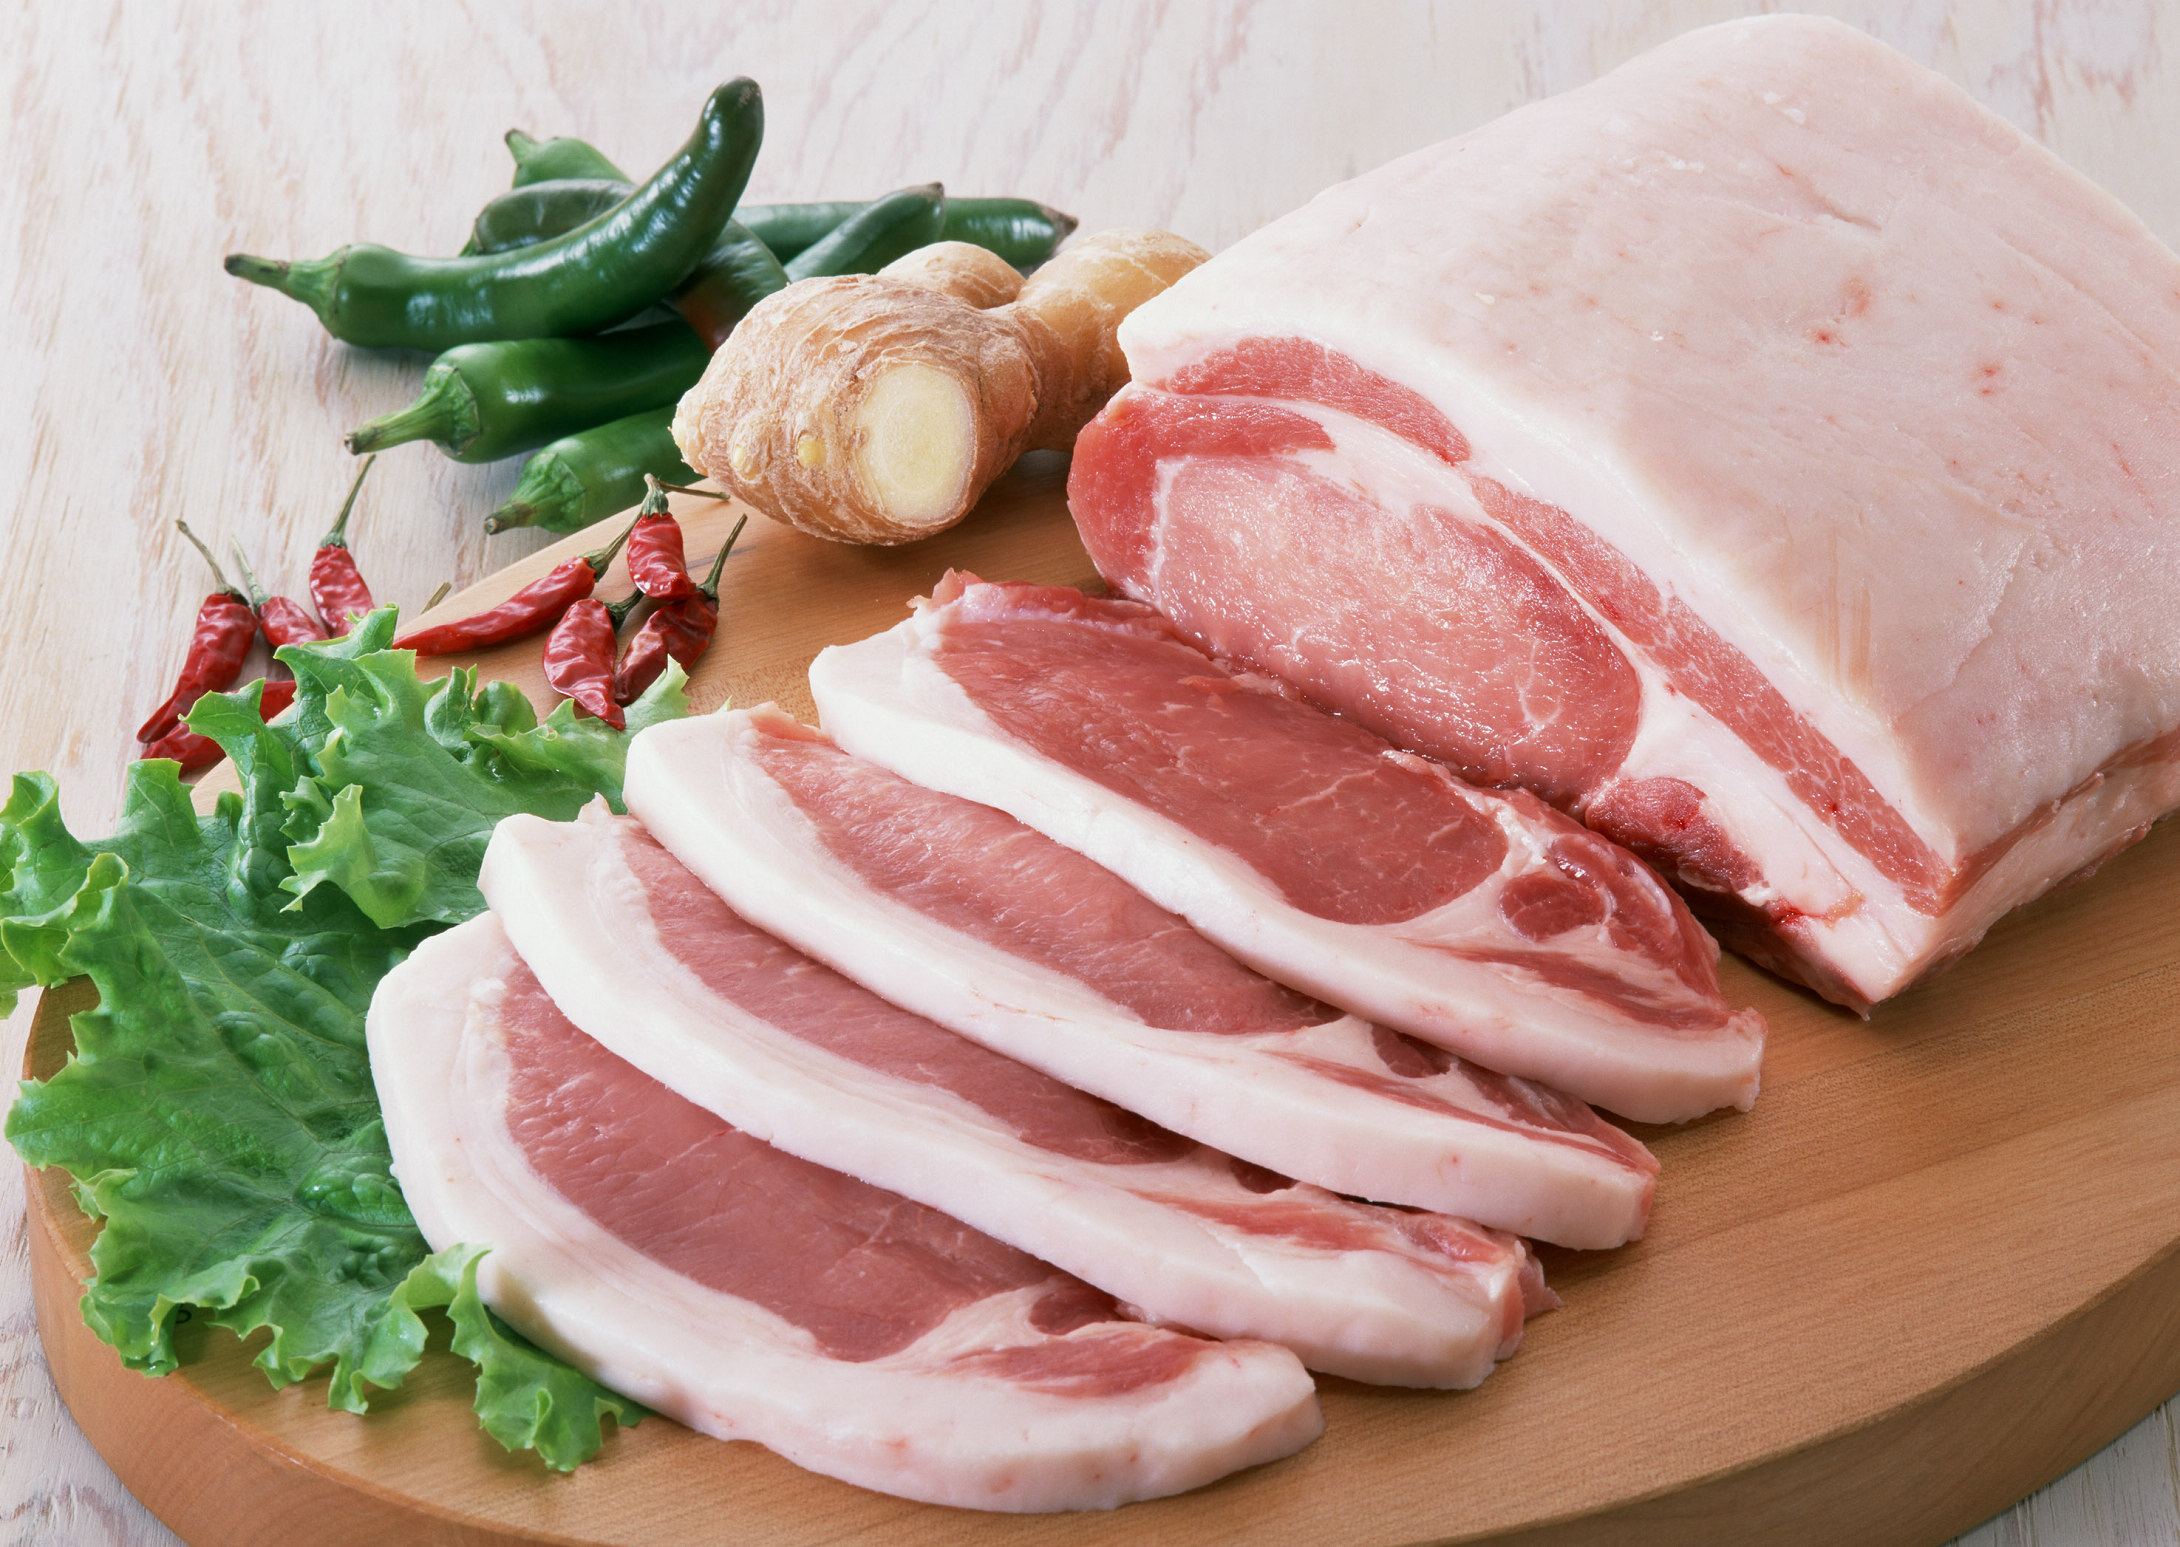 日常生活中怎样挑选好猪肉?